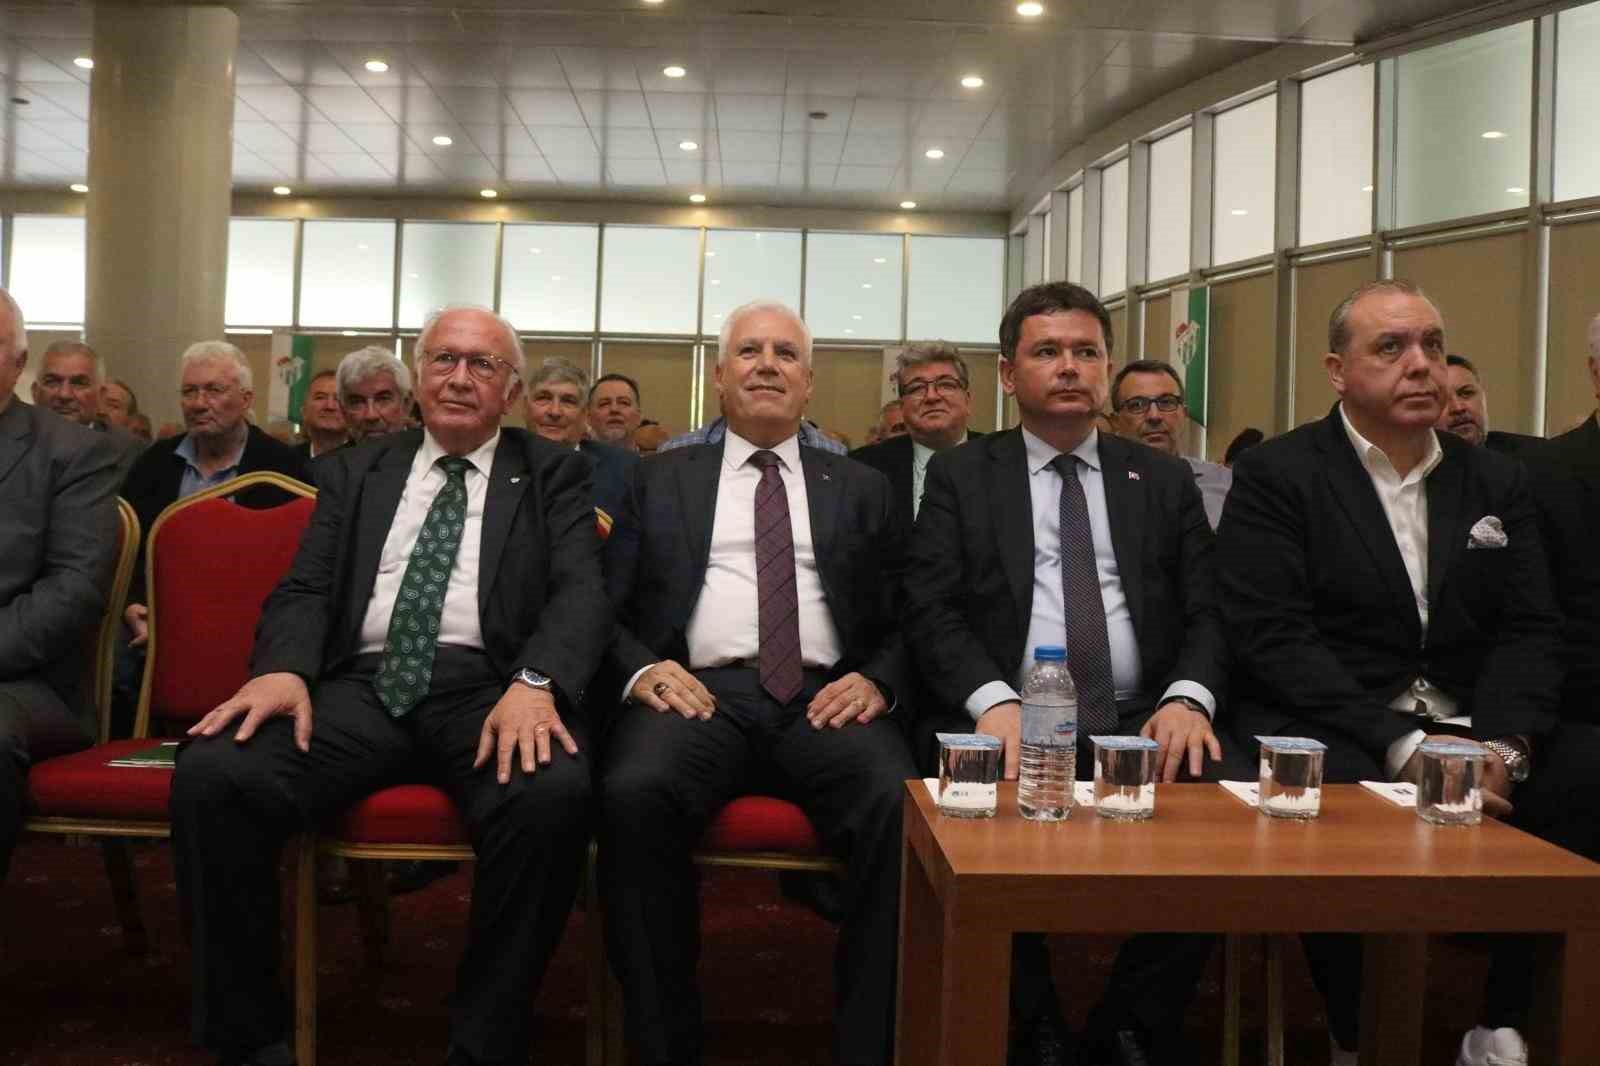 Bursa Büyükşehir Belediye Başkanı Mustafa Bozbey: “Bursaspor için sistem oluşturmalıyız”
